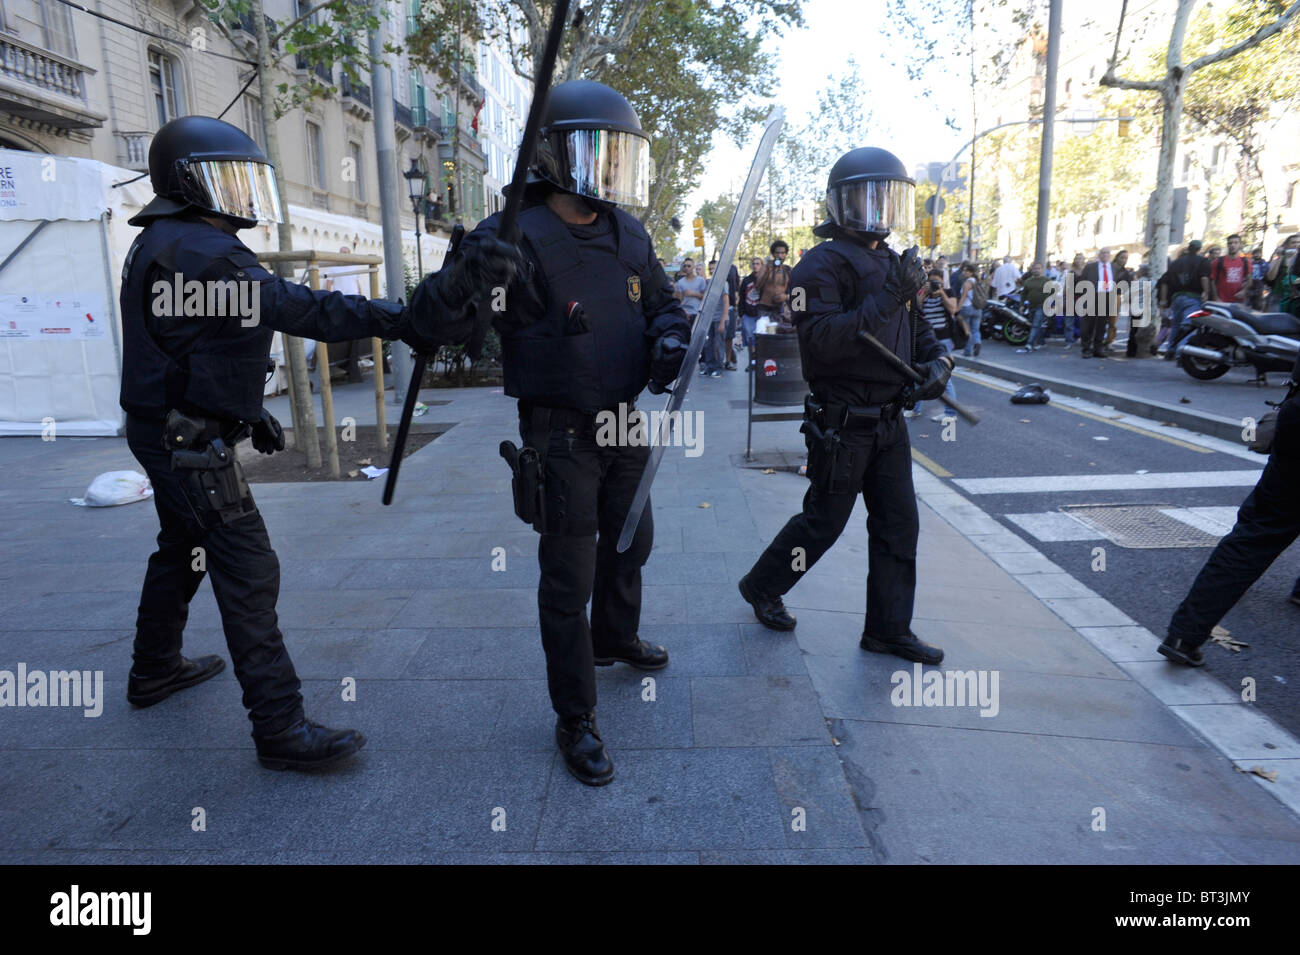 La police anti-émeute anti dans les affrontements dans le centre ville de Barcelone au cours de la grève générale . L'Espagne. Banque D'Images